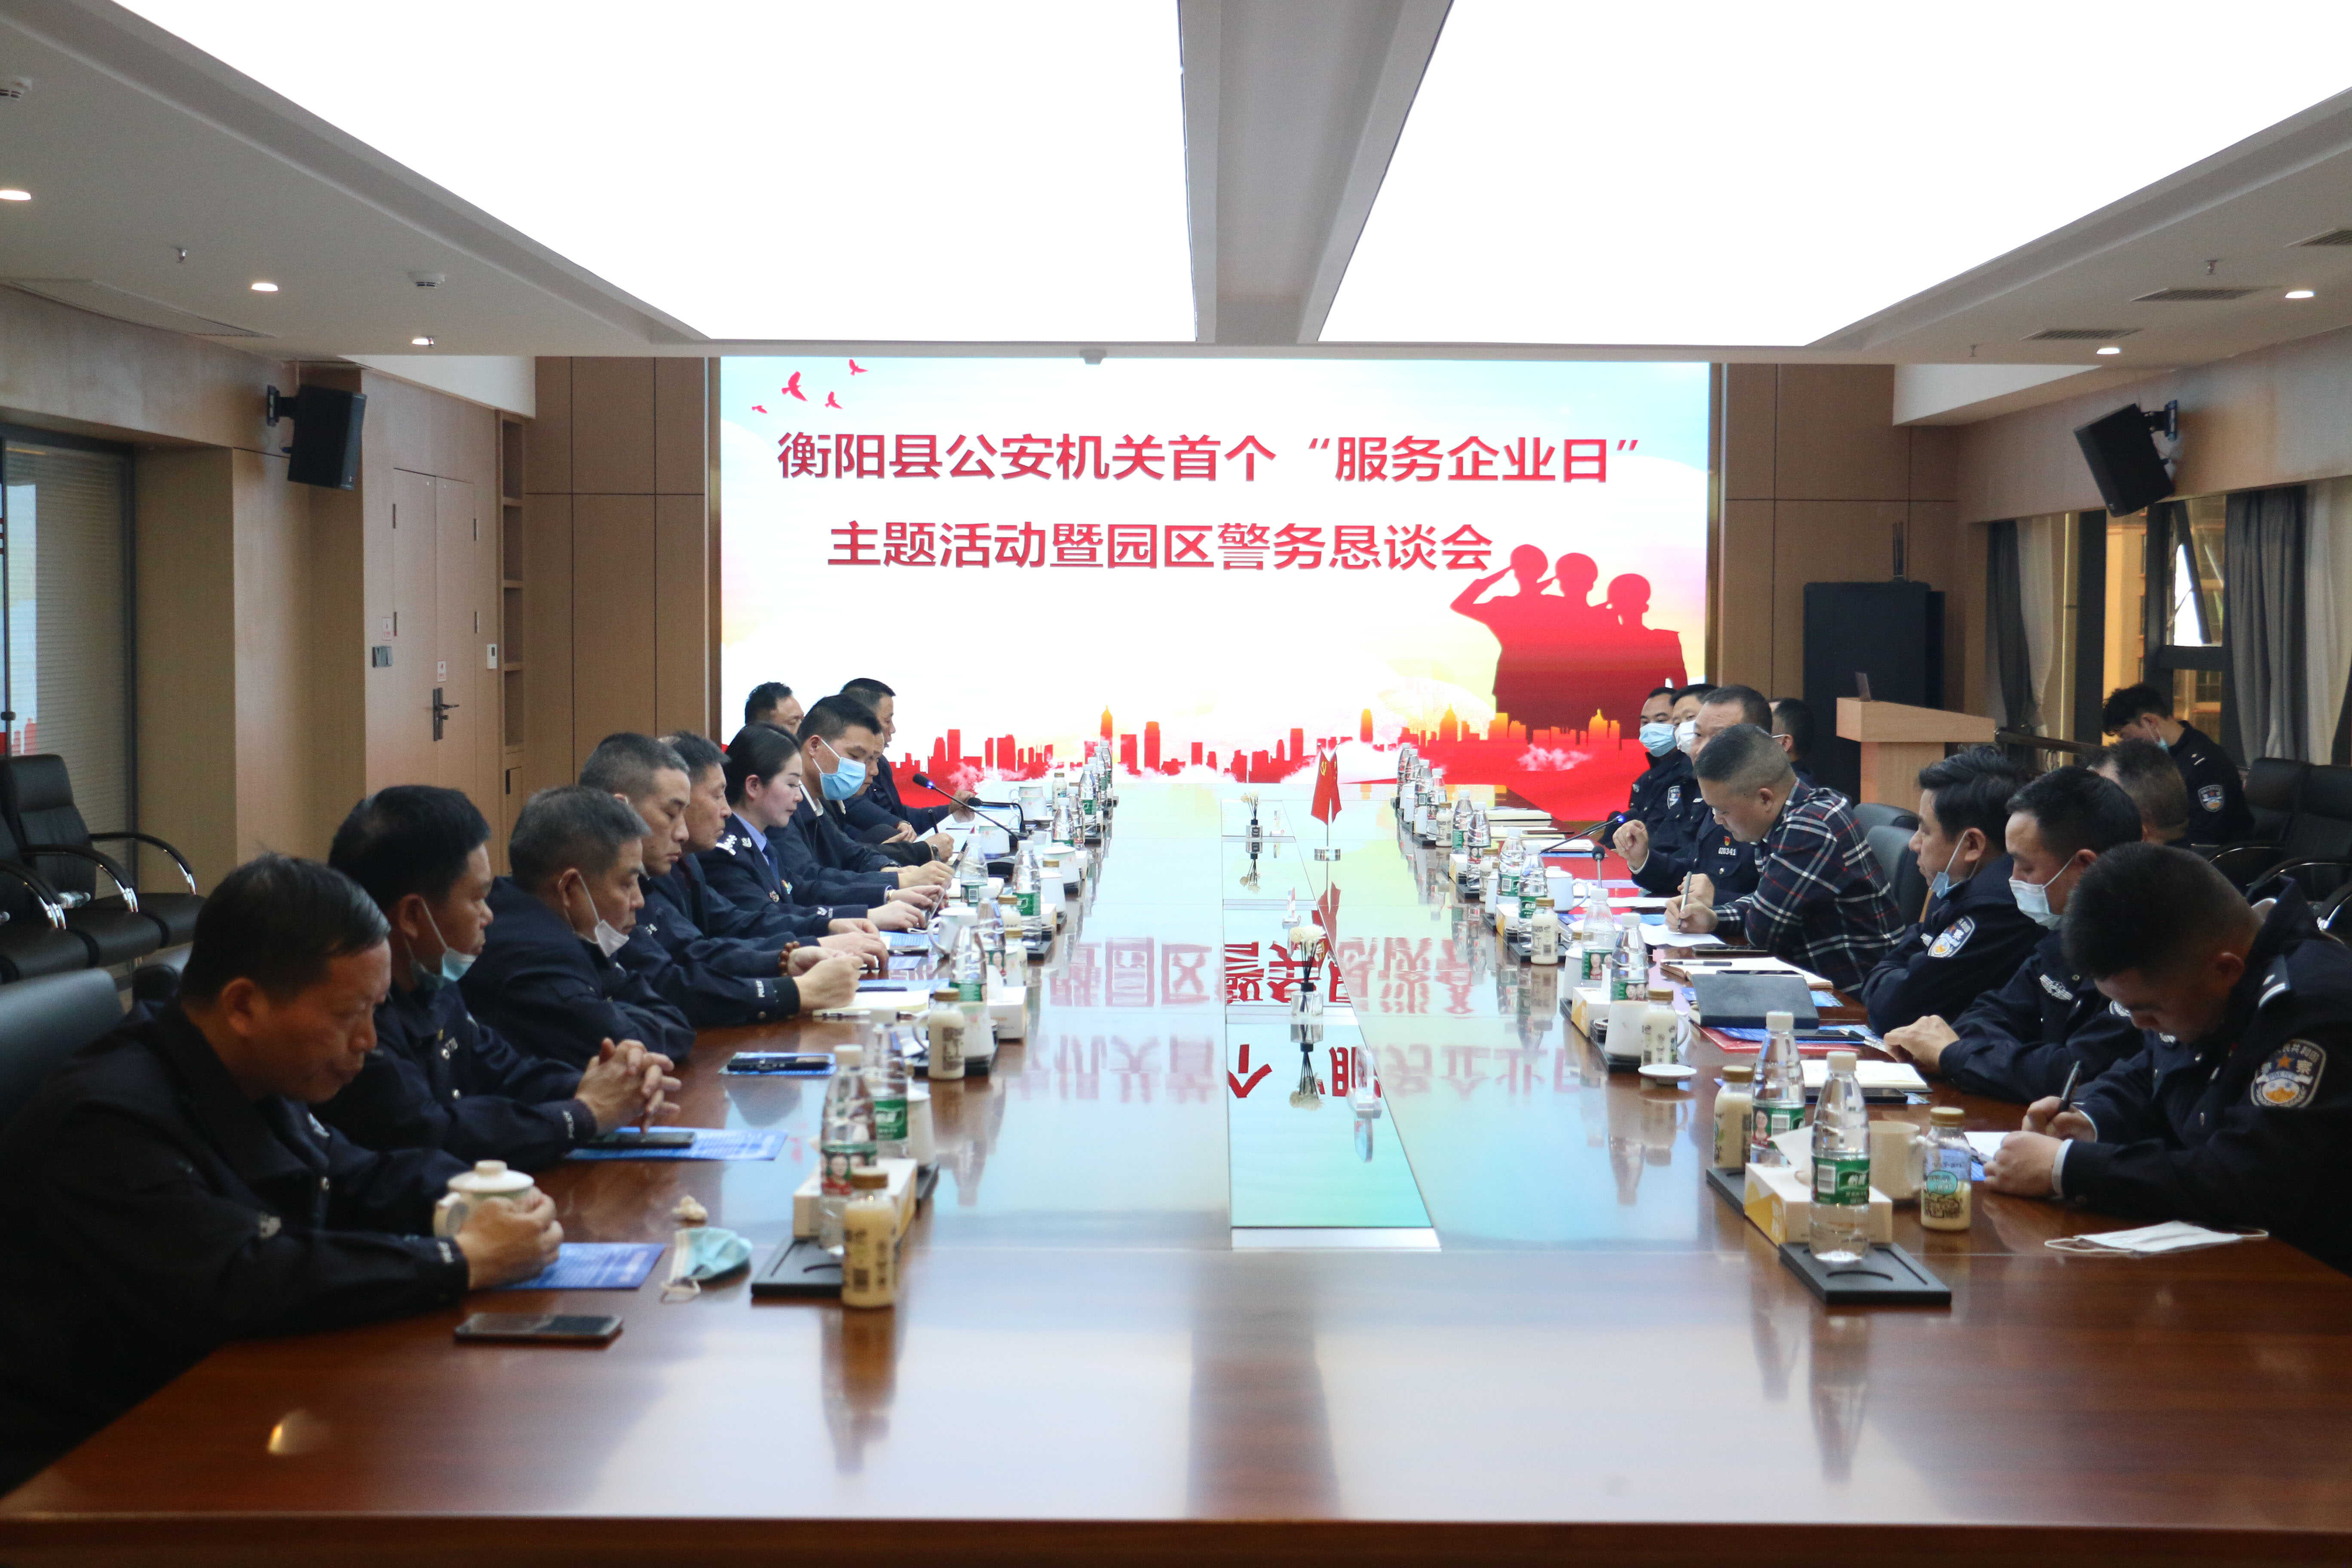 衡阳县公安首个“服务企业日”活动在角山米业举行